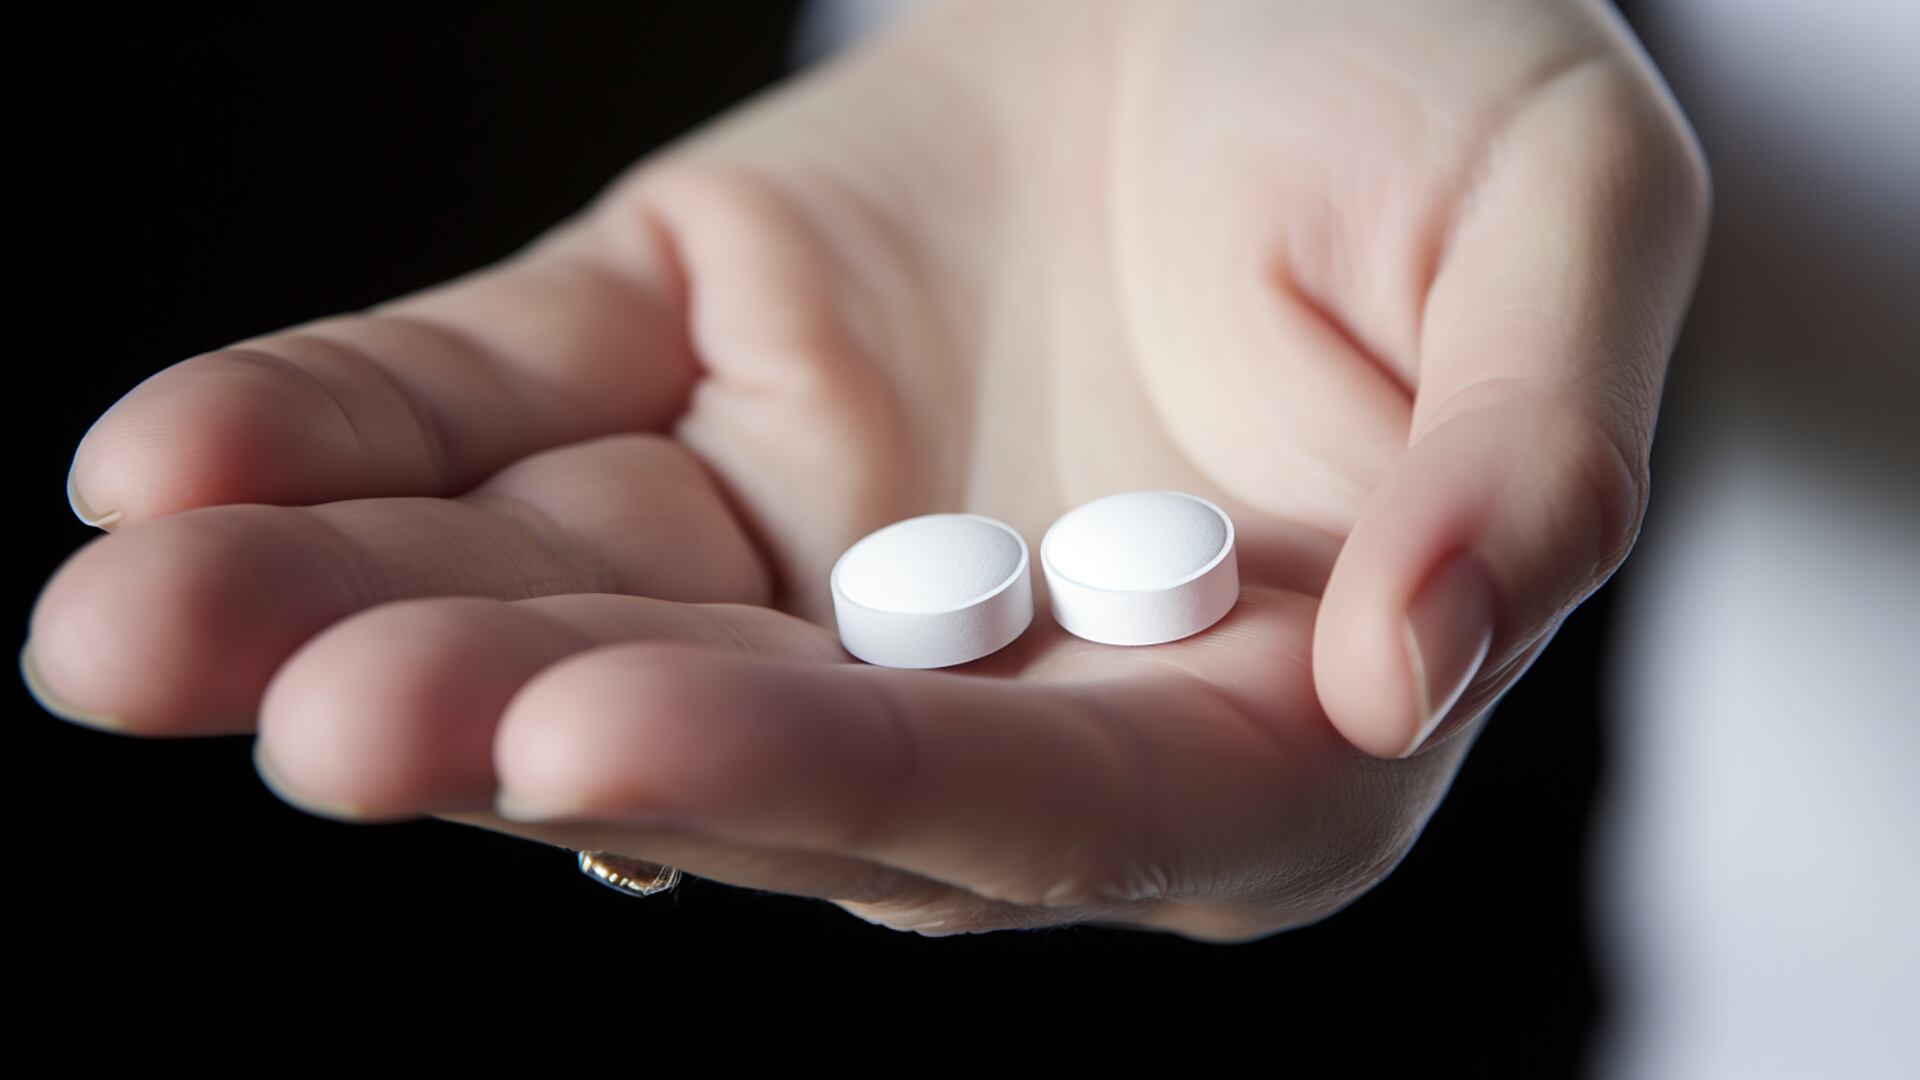 aspirina jaqueca Aspirin ácido acetilsalicílico  - visualesIA